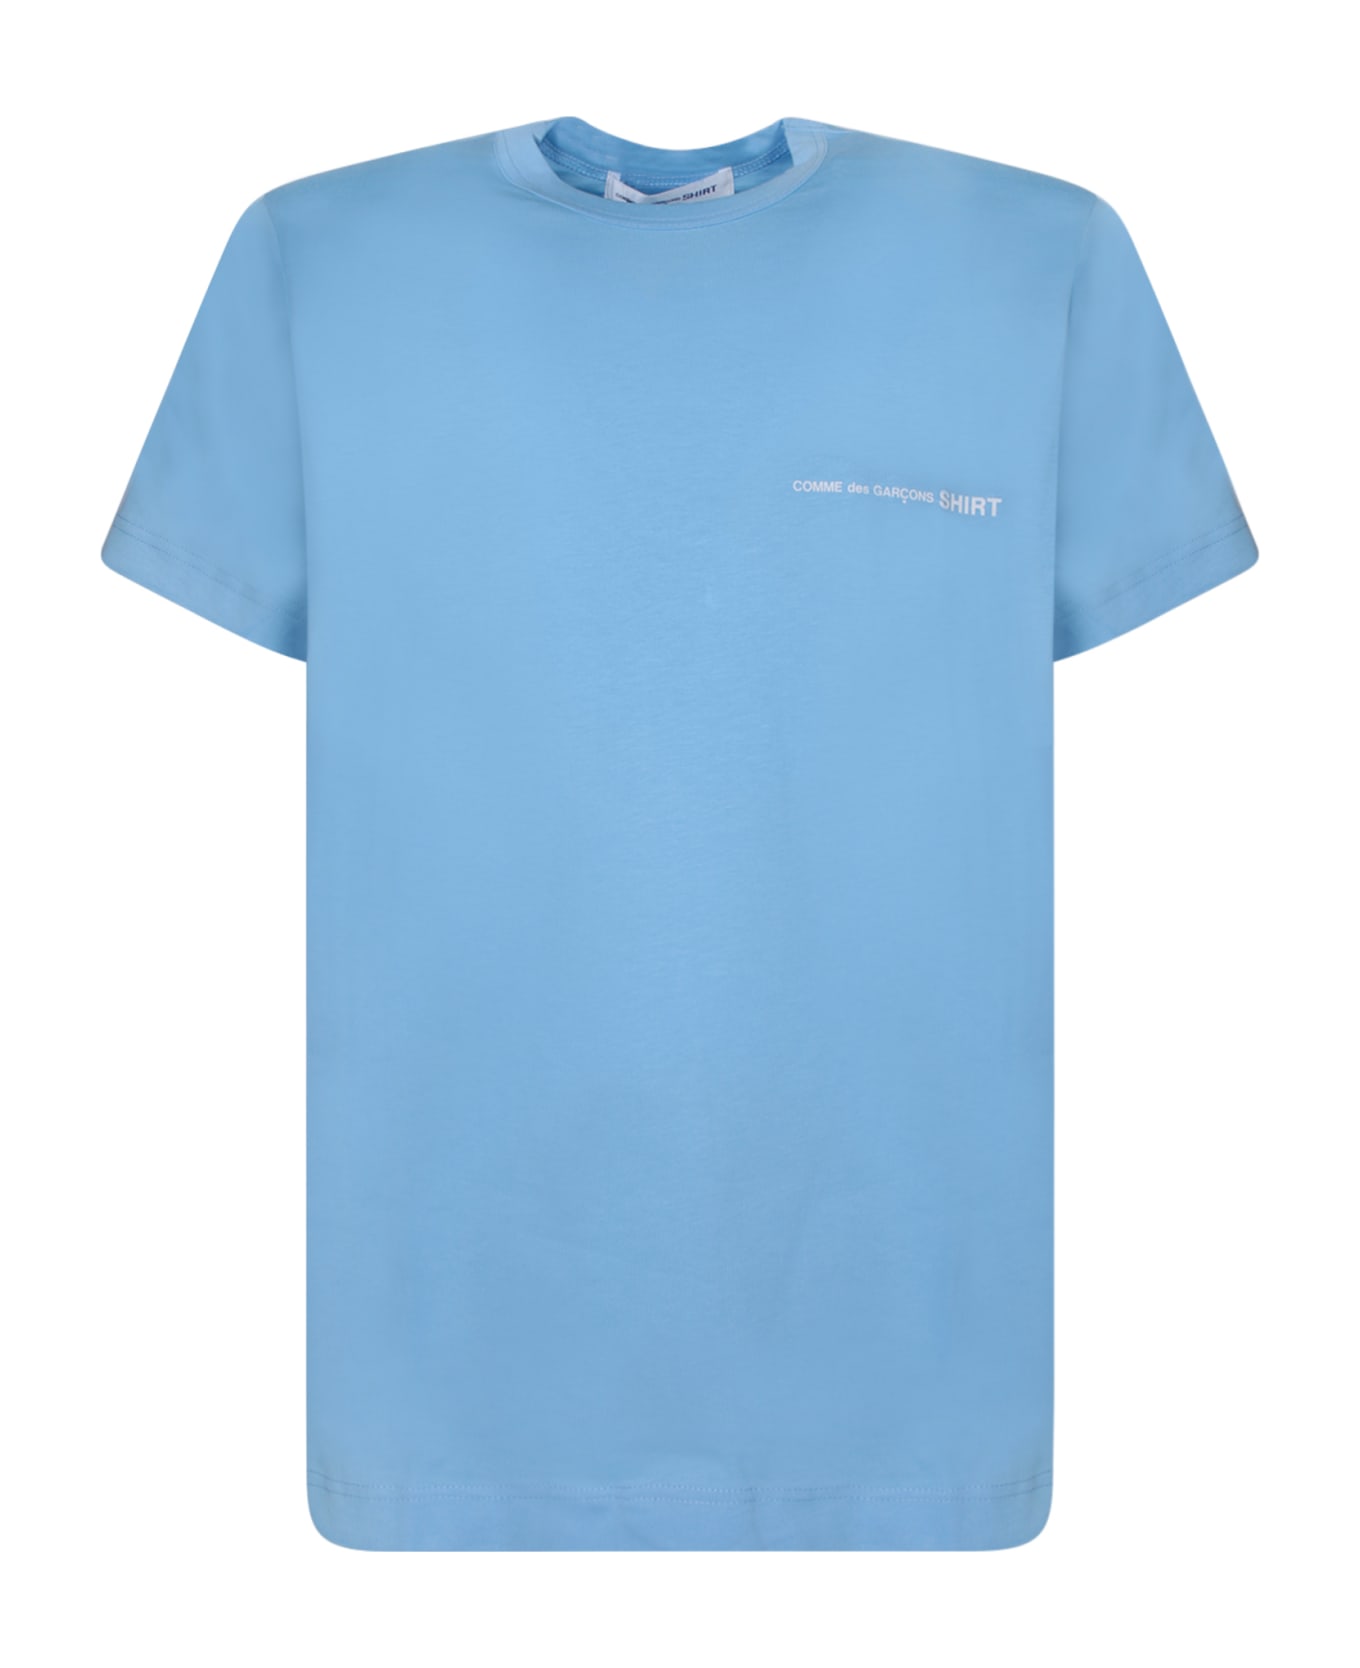 Comme des Garçons Shirt Regular Fit Light Blue T-shirt - Blue シャツ